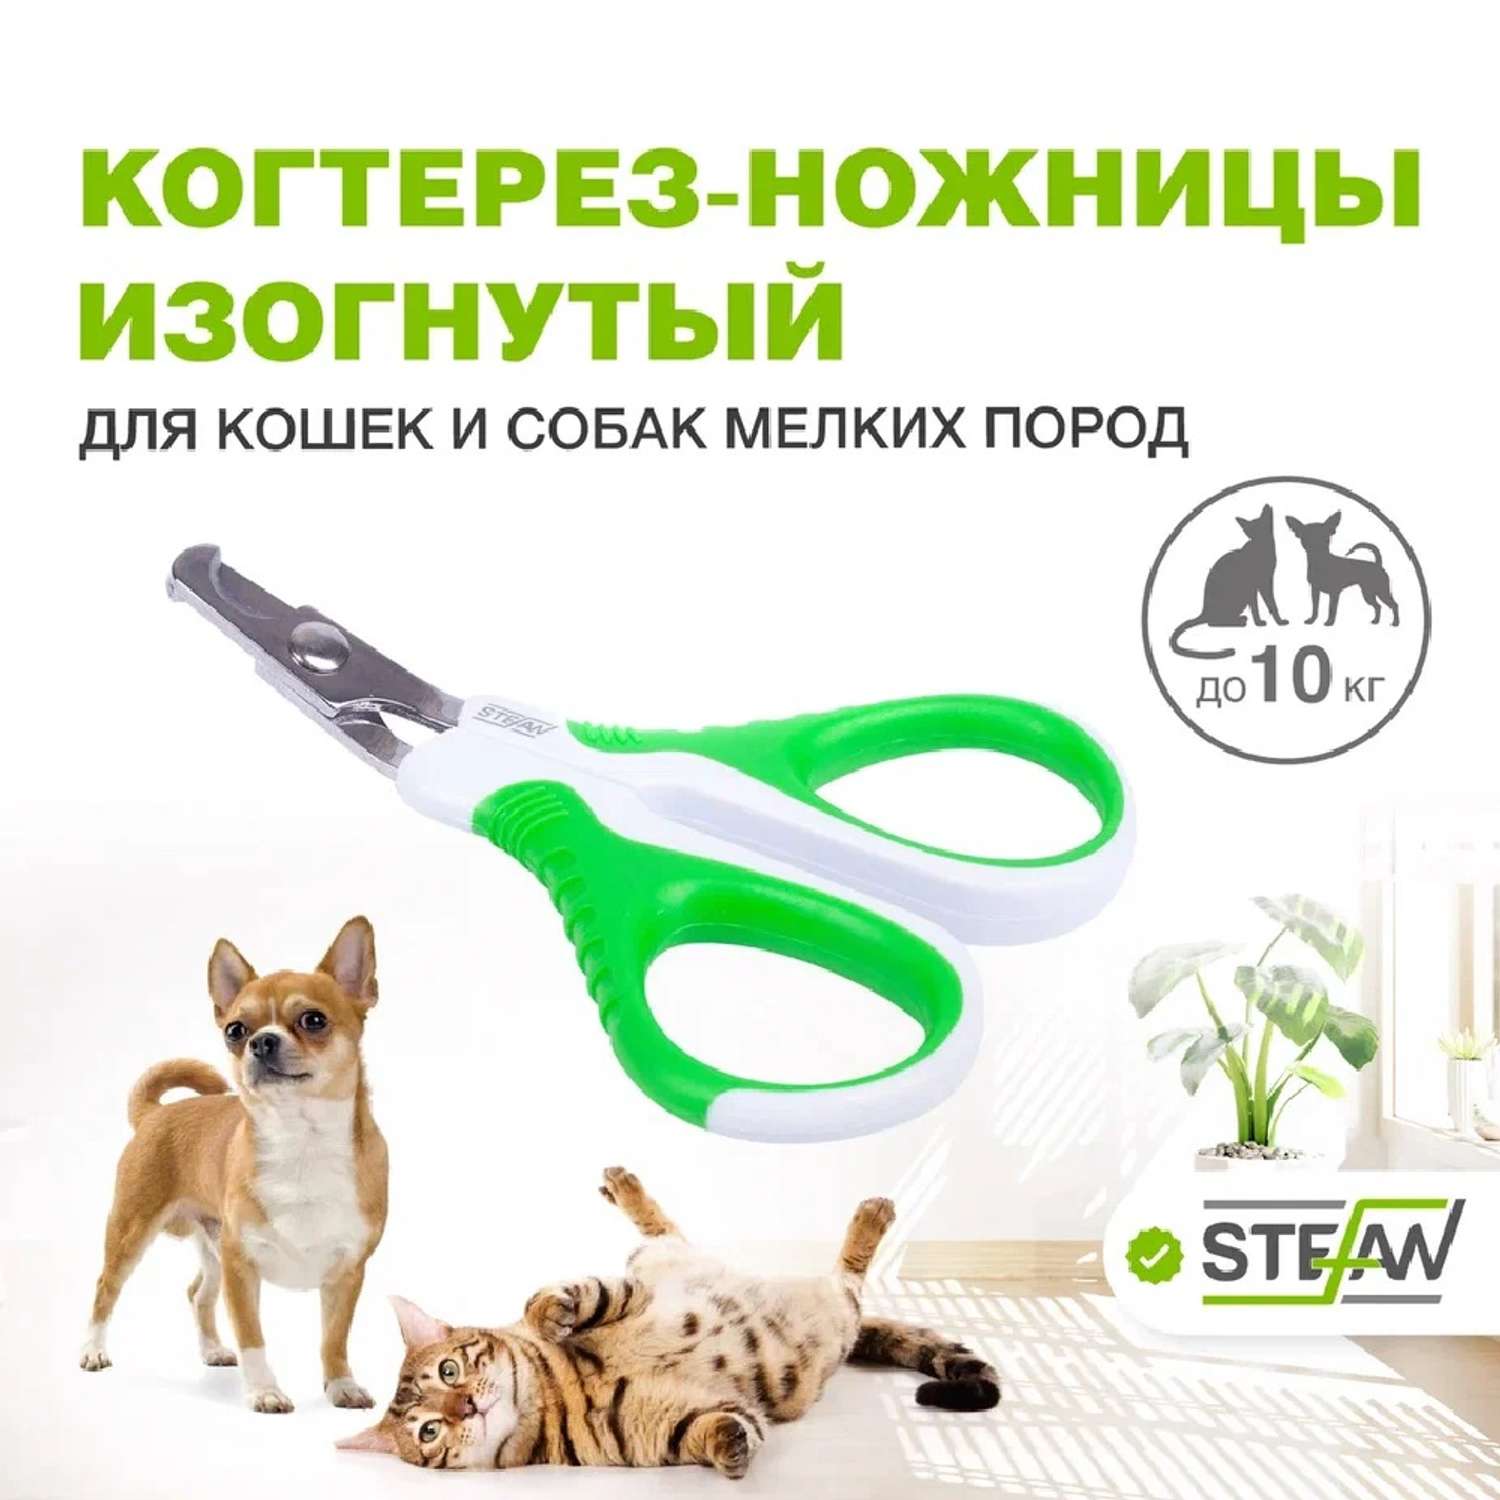 Когтерез-ножницы для животных Stefan изогнутый малый купить по цене 535 ₽ с  доставкой в Москве и России, отзывы, фото